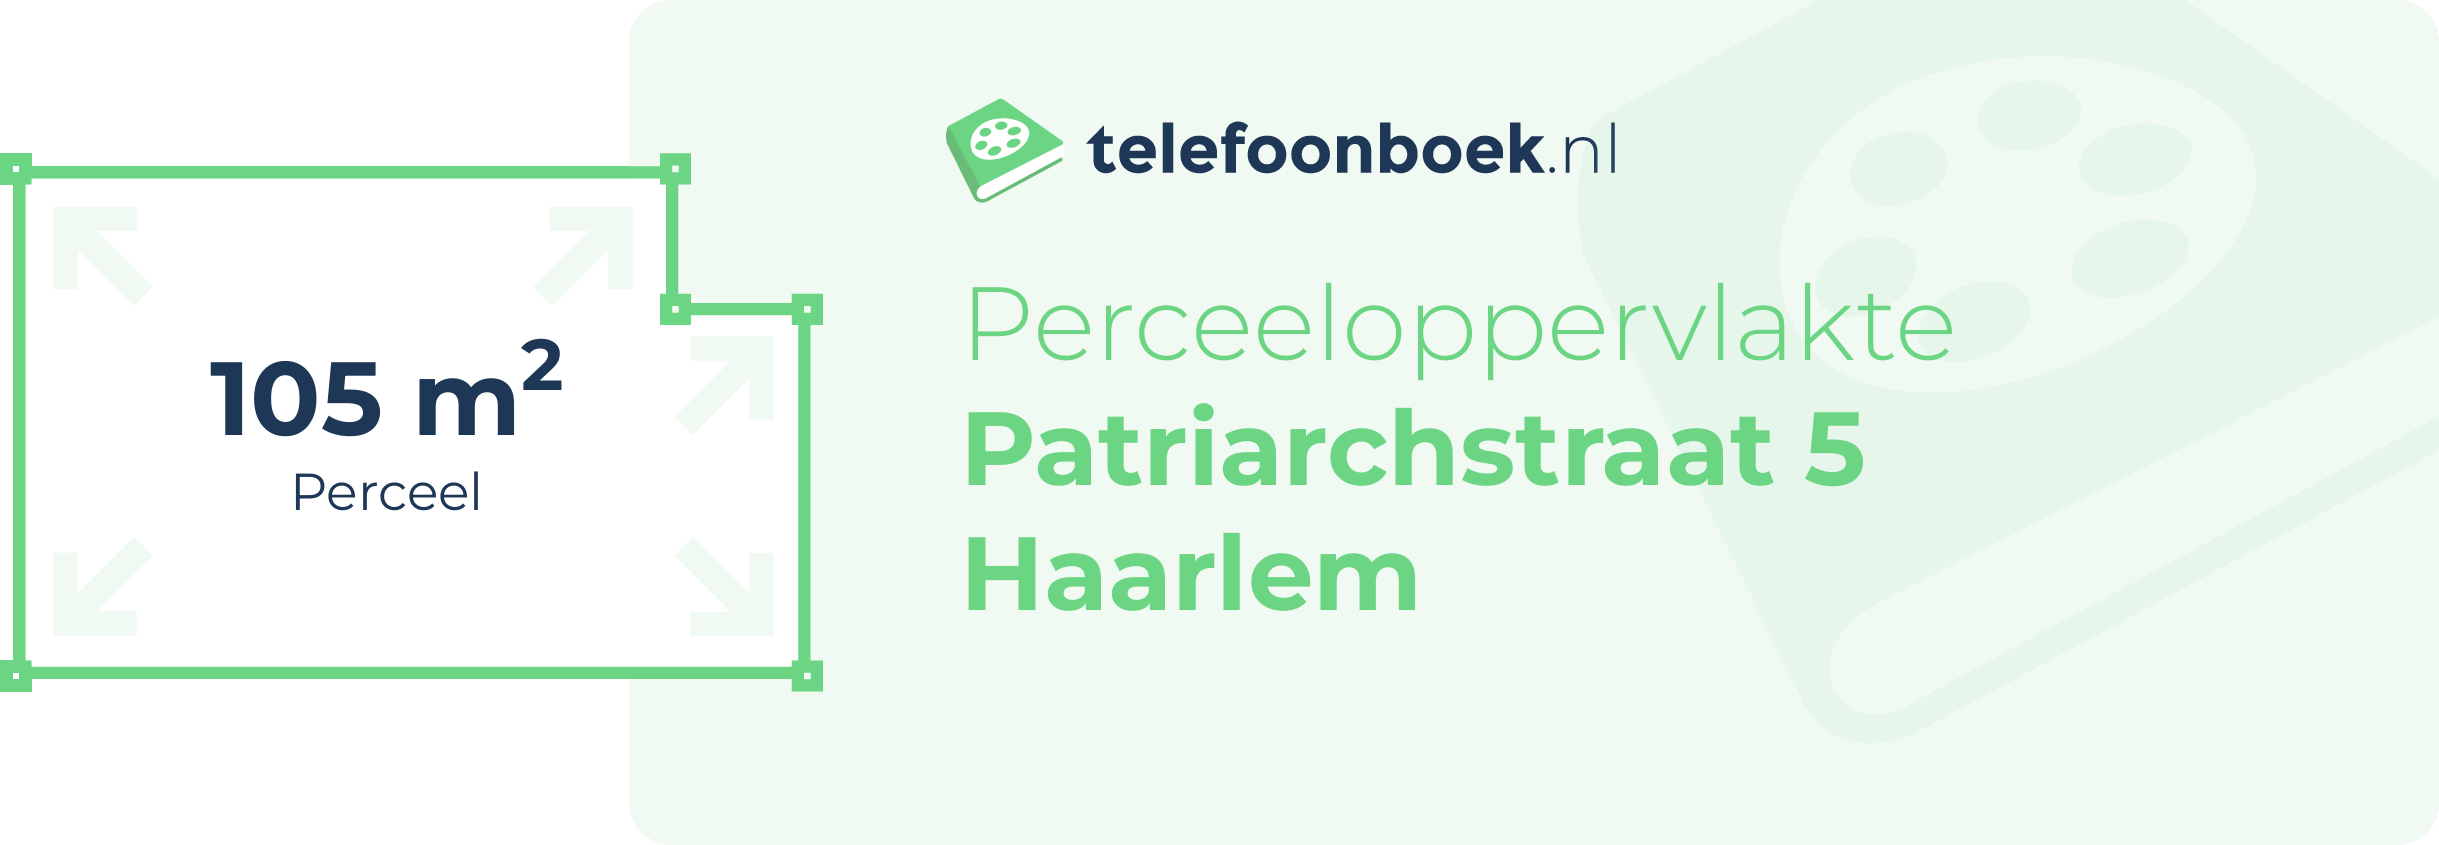 Perceeloppervlakte Patriarchstraat 5 Haarlem